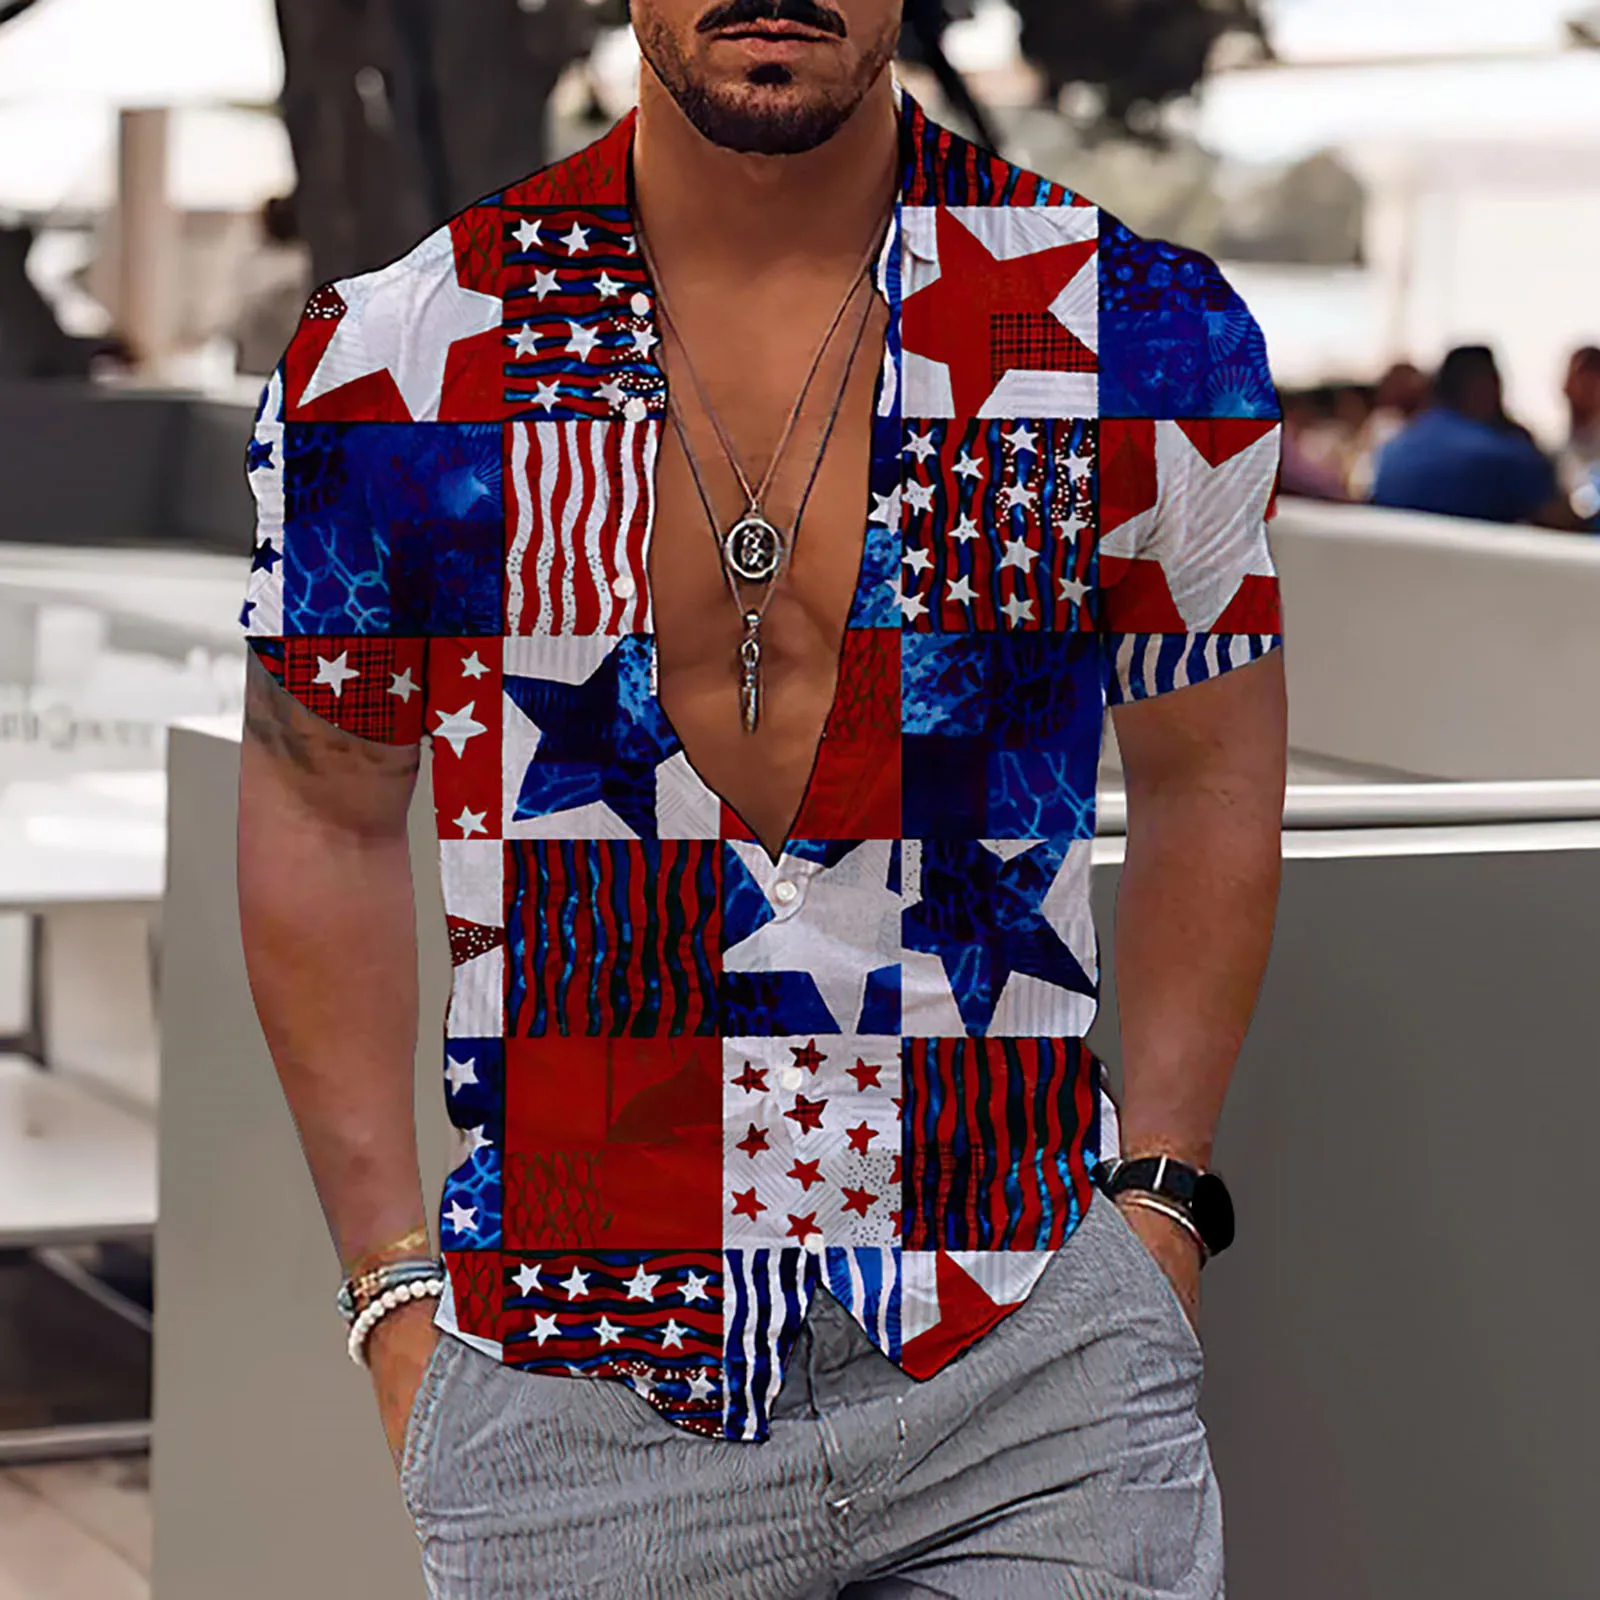 

Мужская мода и досуг 3D цифровая печать на пуговицах отворот День Независимости с короткими рукавами в стиле 70-х Стильная мужская одежда футболка